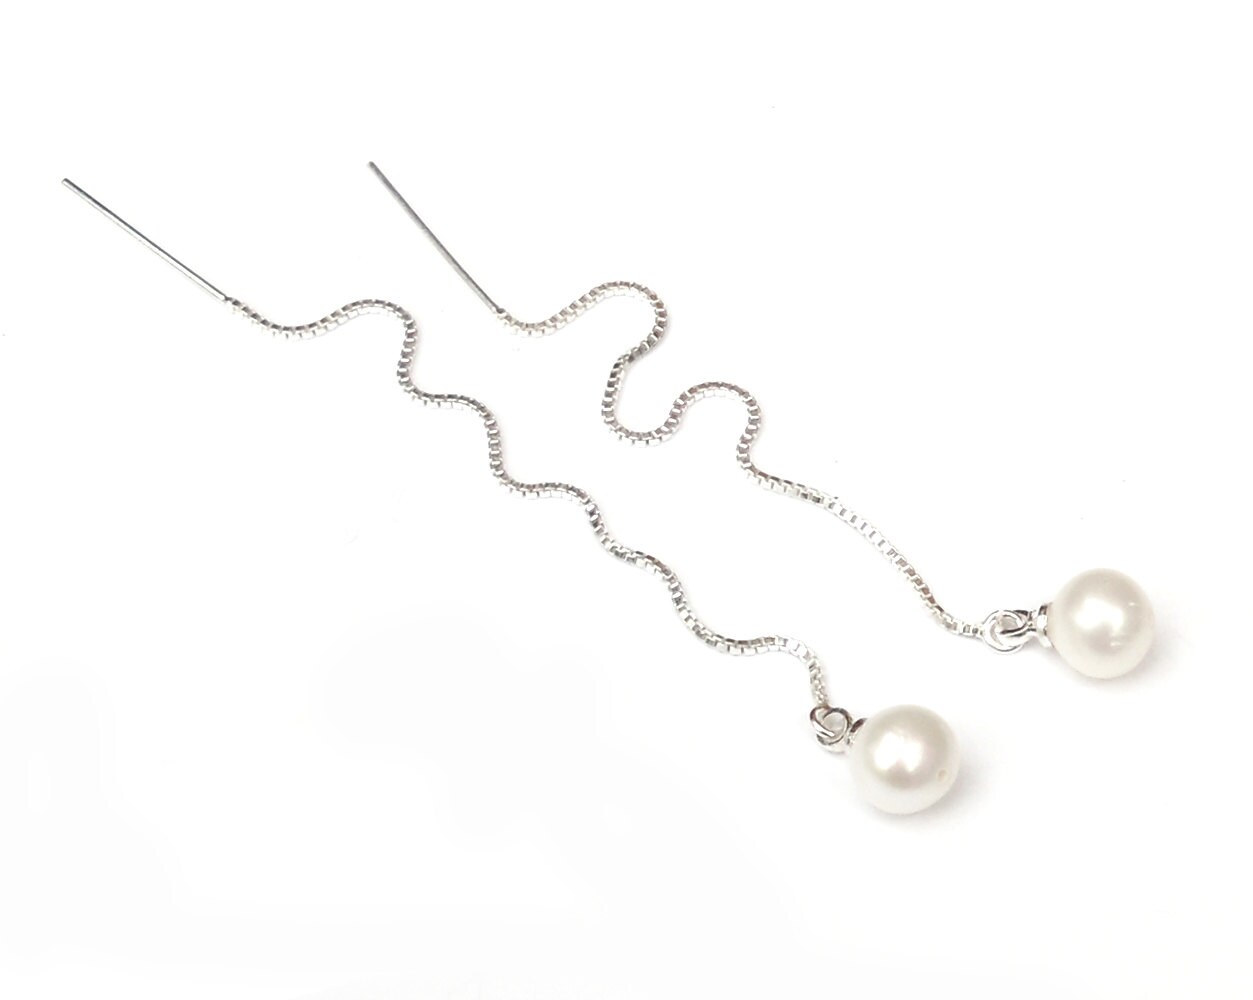 June birthstone gift Freshwater pearls threader earrings in sterling silver Wedding earrings. 